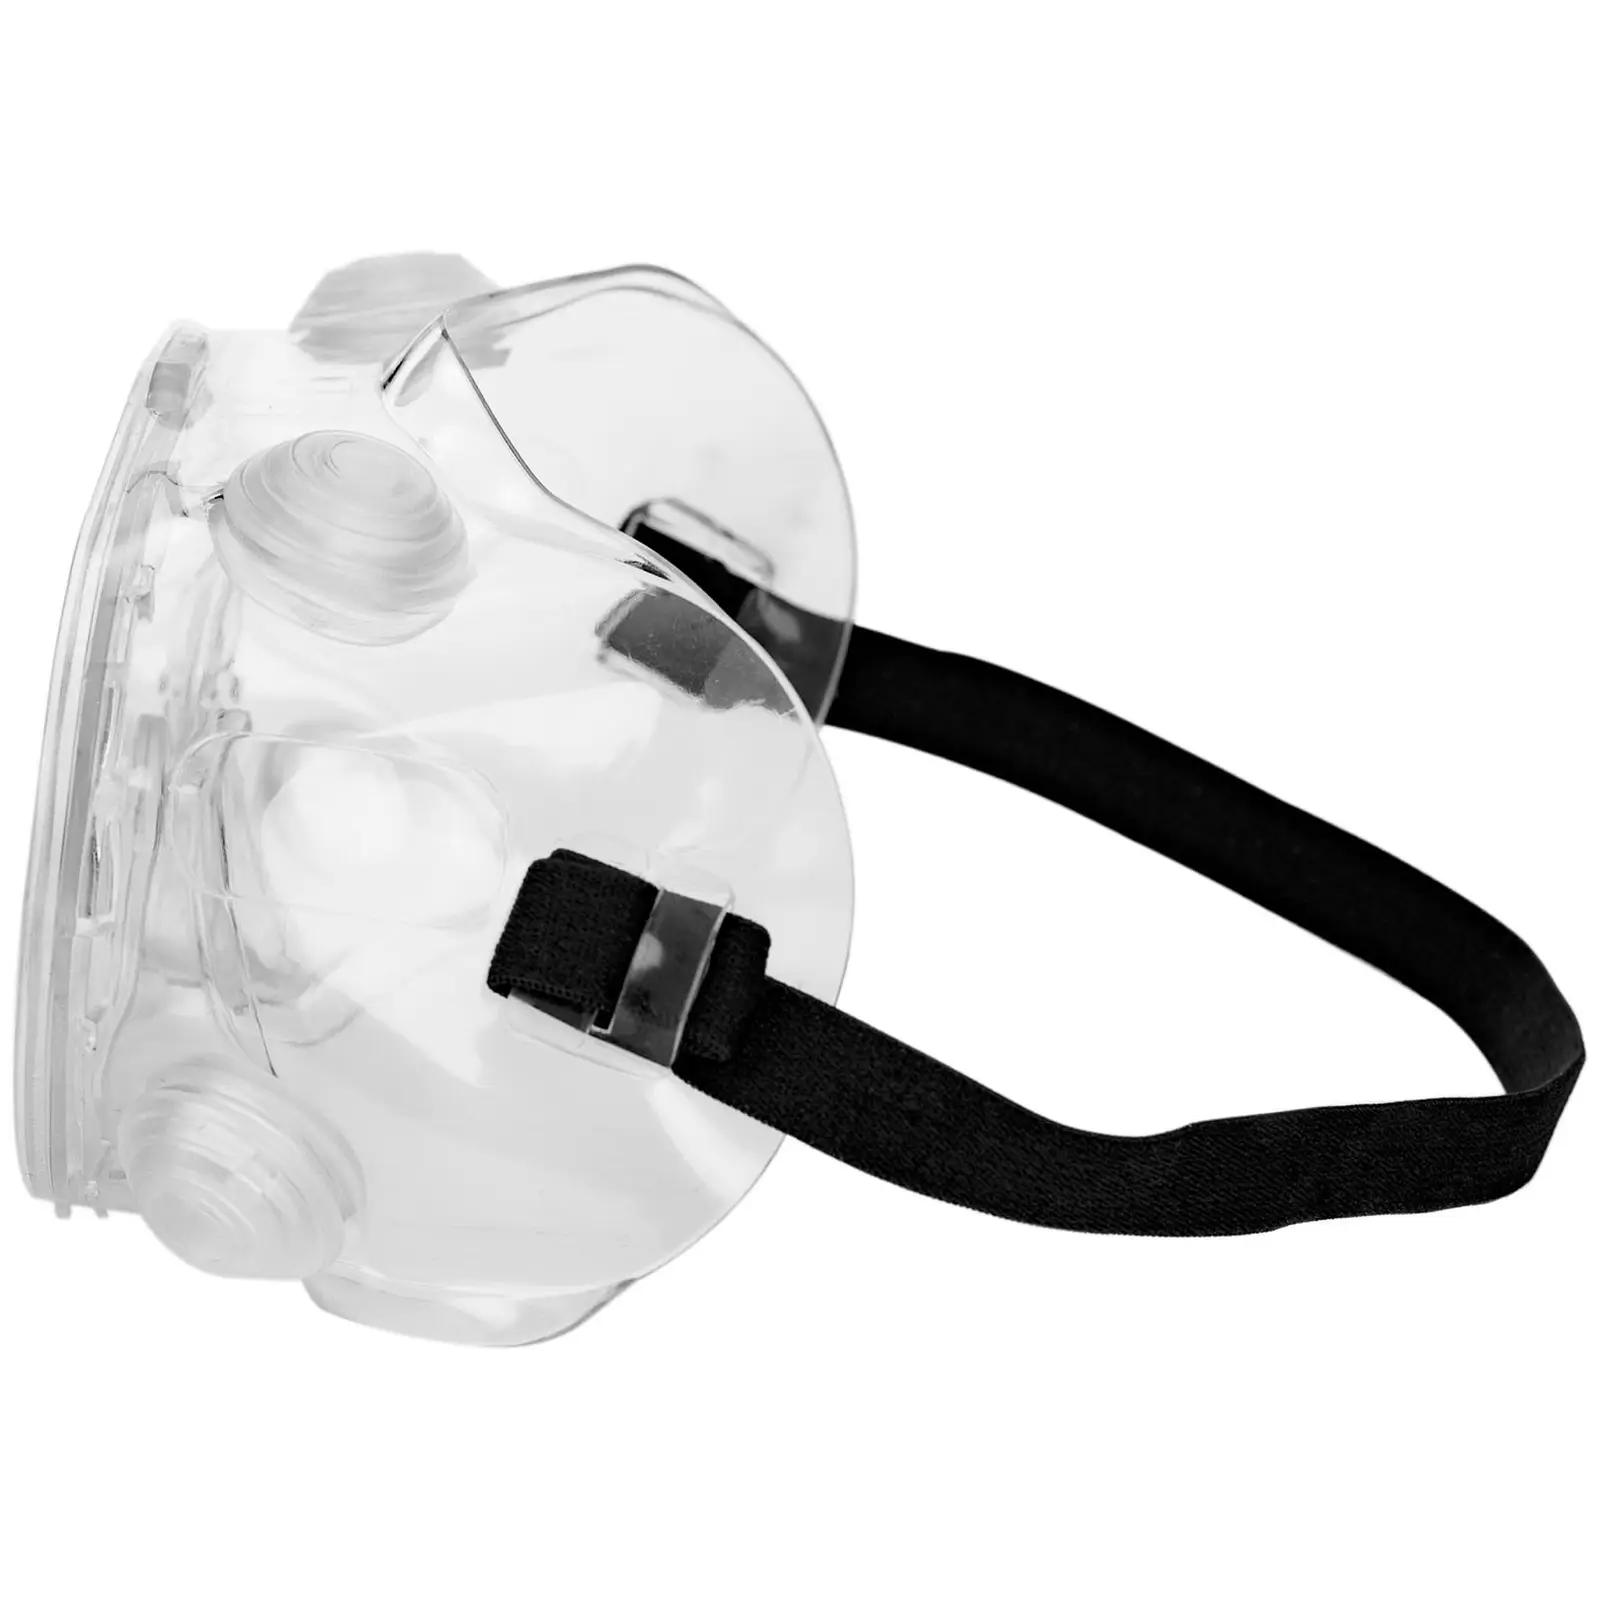 Védőszemüveg - 10 darabos készlet - átlátszó - egyen méret